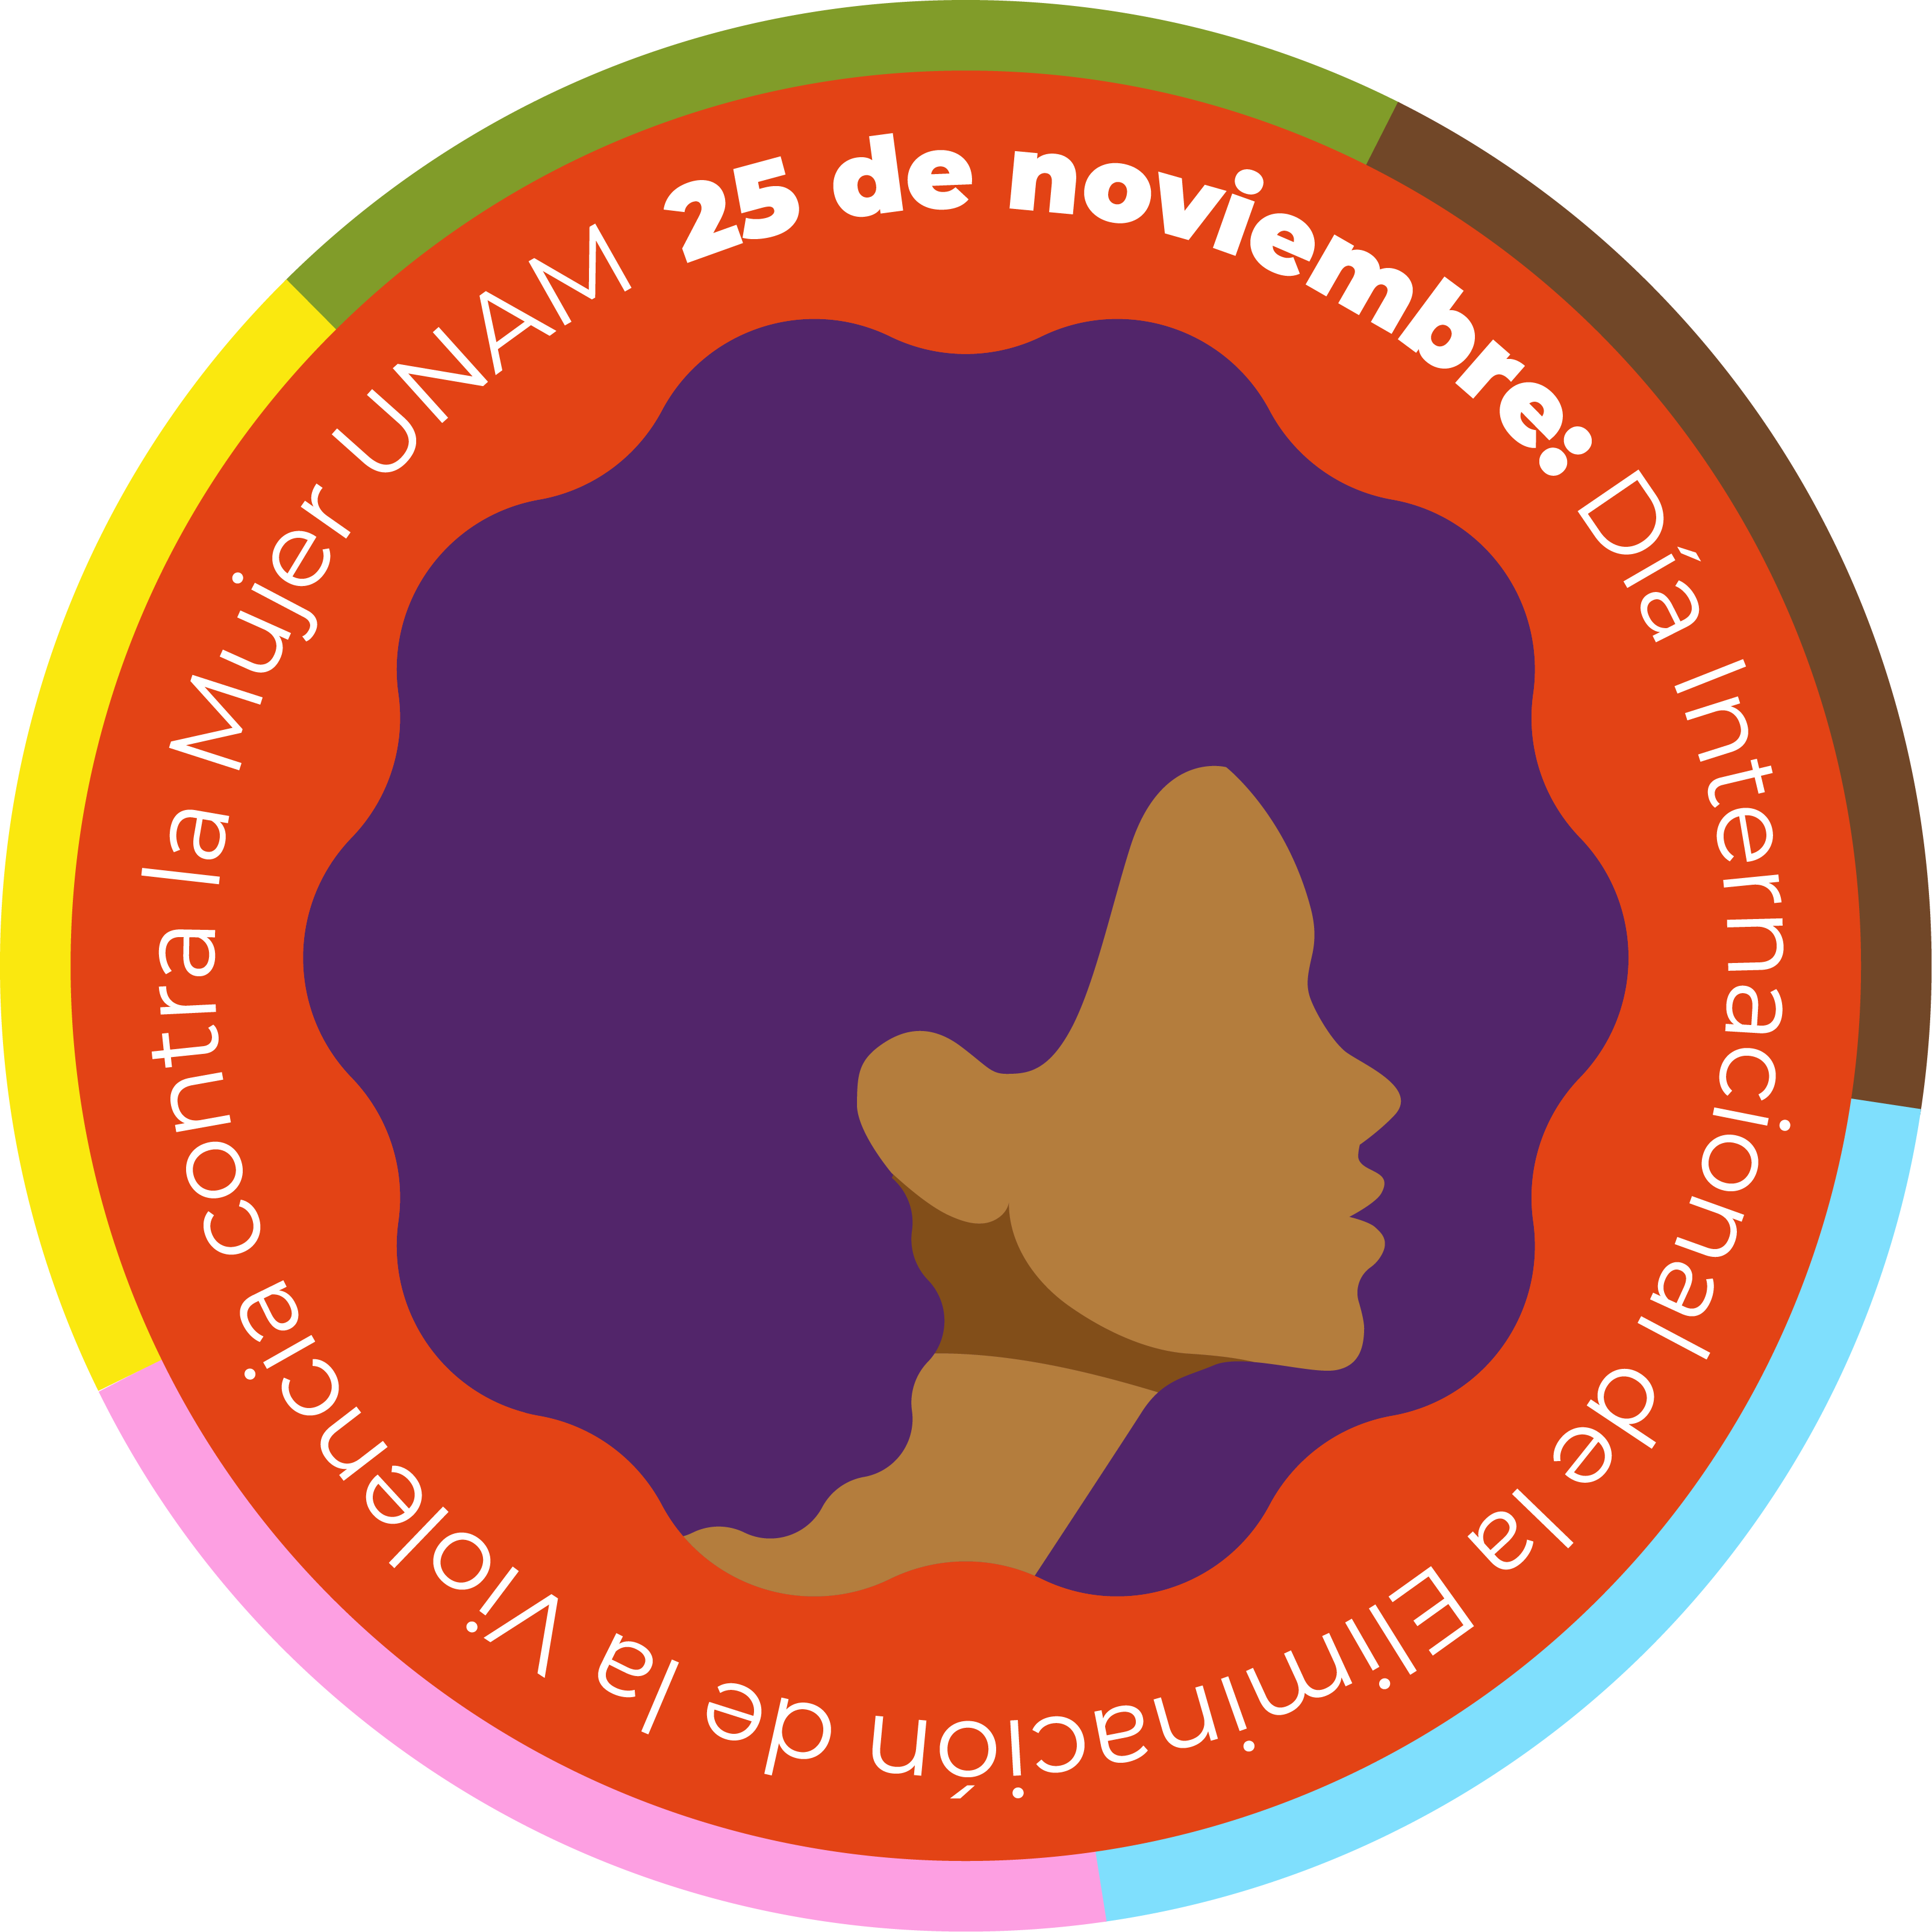 25 de noviembre. Día Internacional de la Eliminación de la Violencia contra la Mujer.